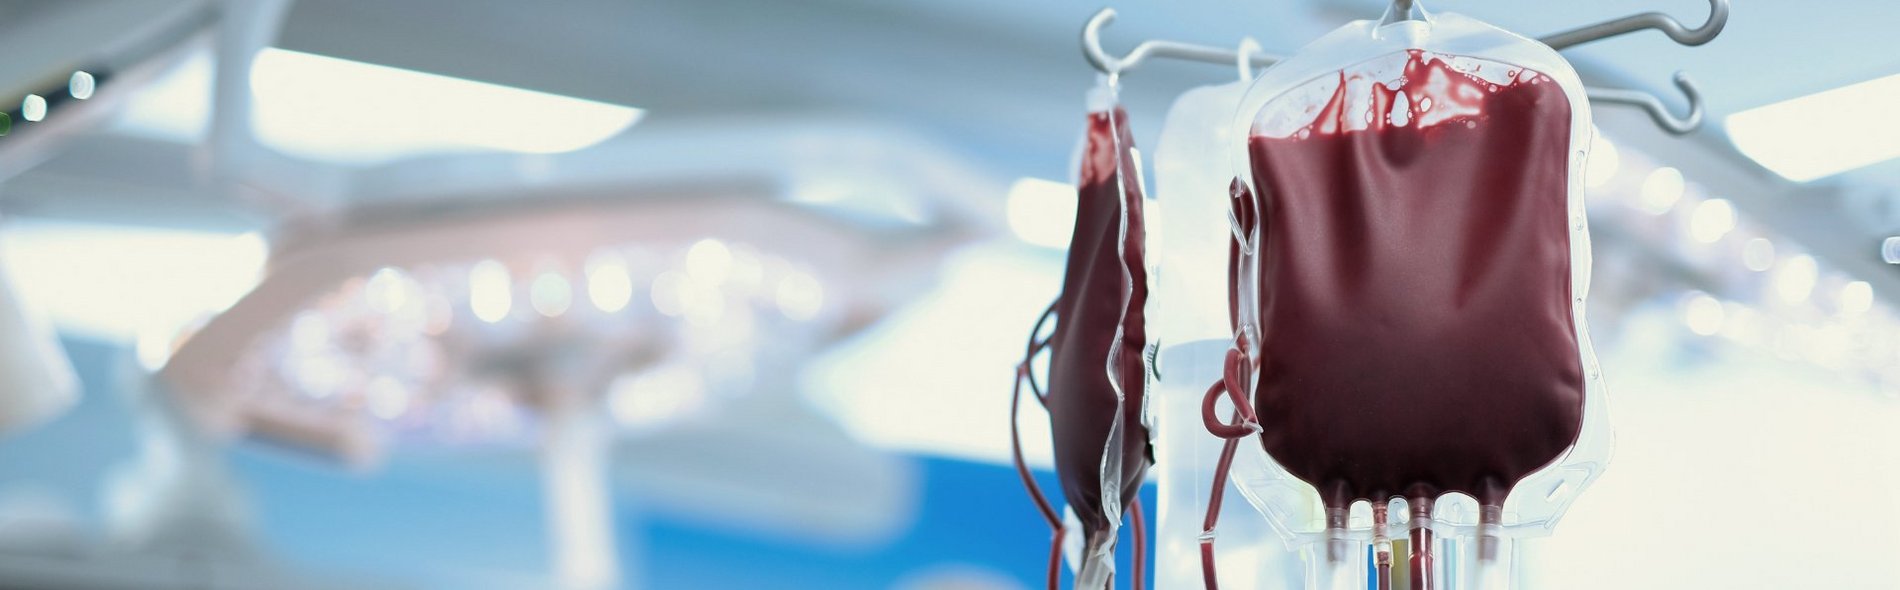 Foto von einem Transfusionsbeutel als Symbol für eine Bluttransfusion in einer Klinik.